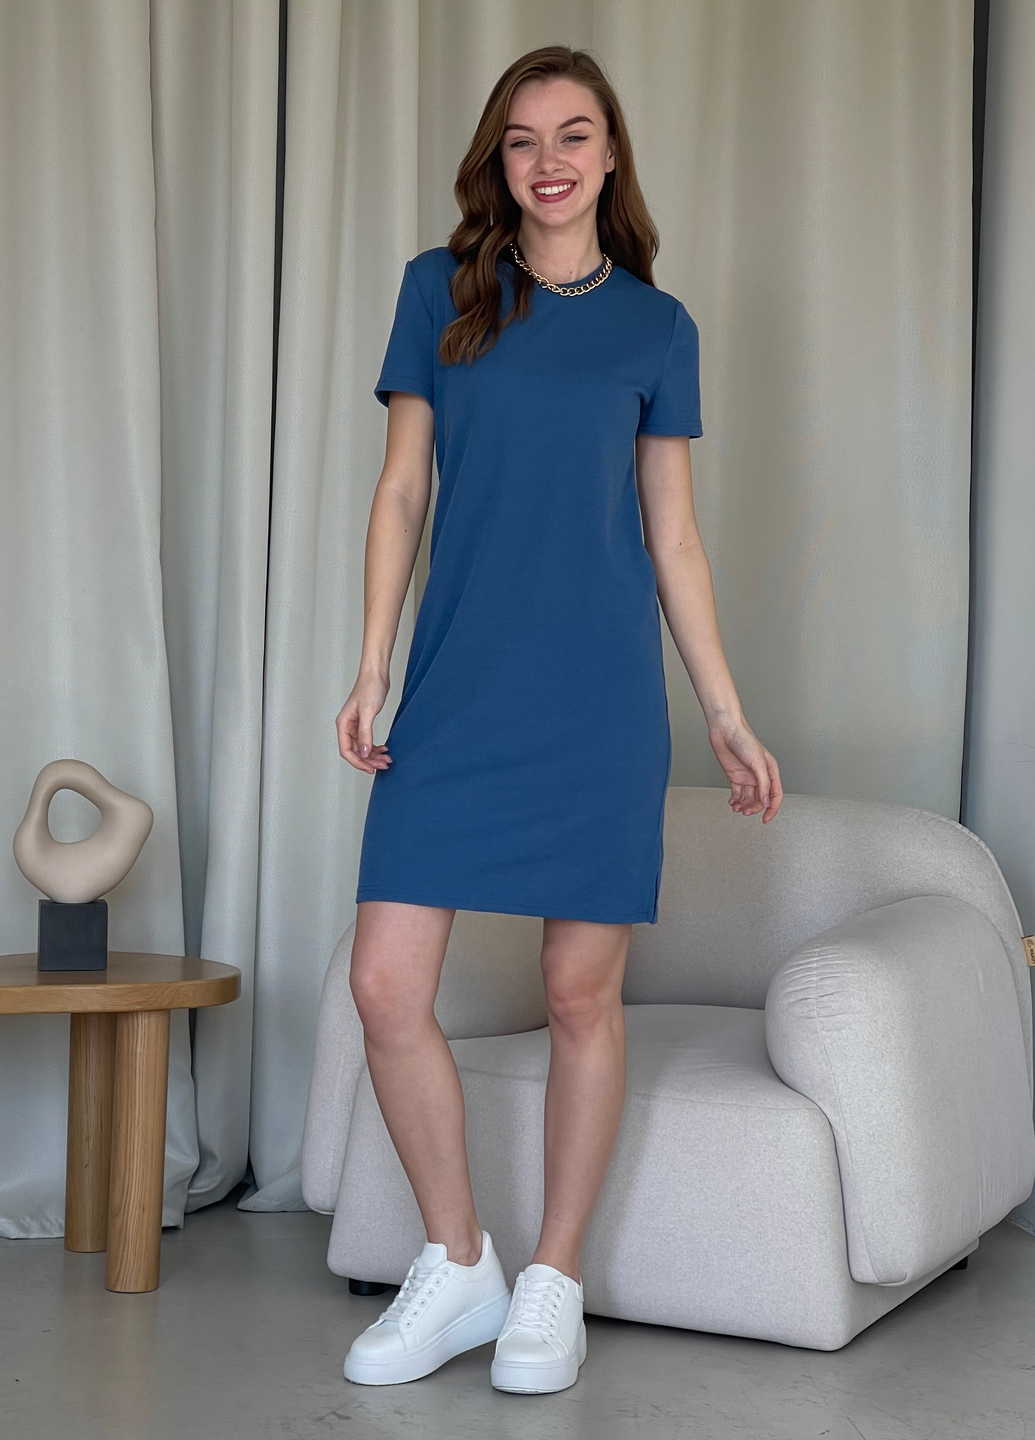 Купить Платье-футболка до колена в рубчик синее Merlini Милан 700000151 размер 42-44 (S-M) в интернет-магазине